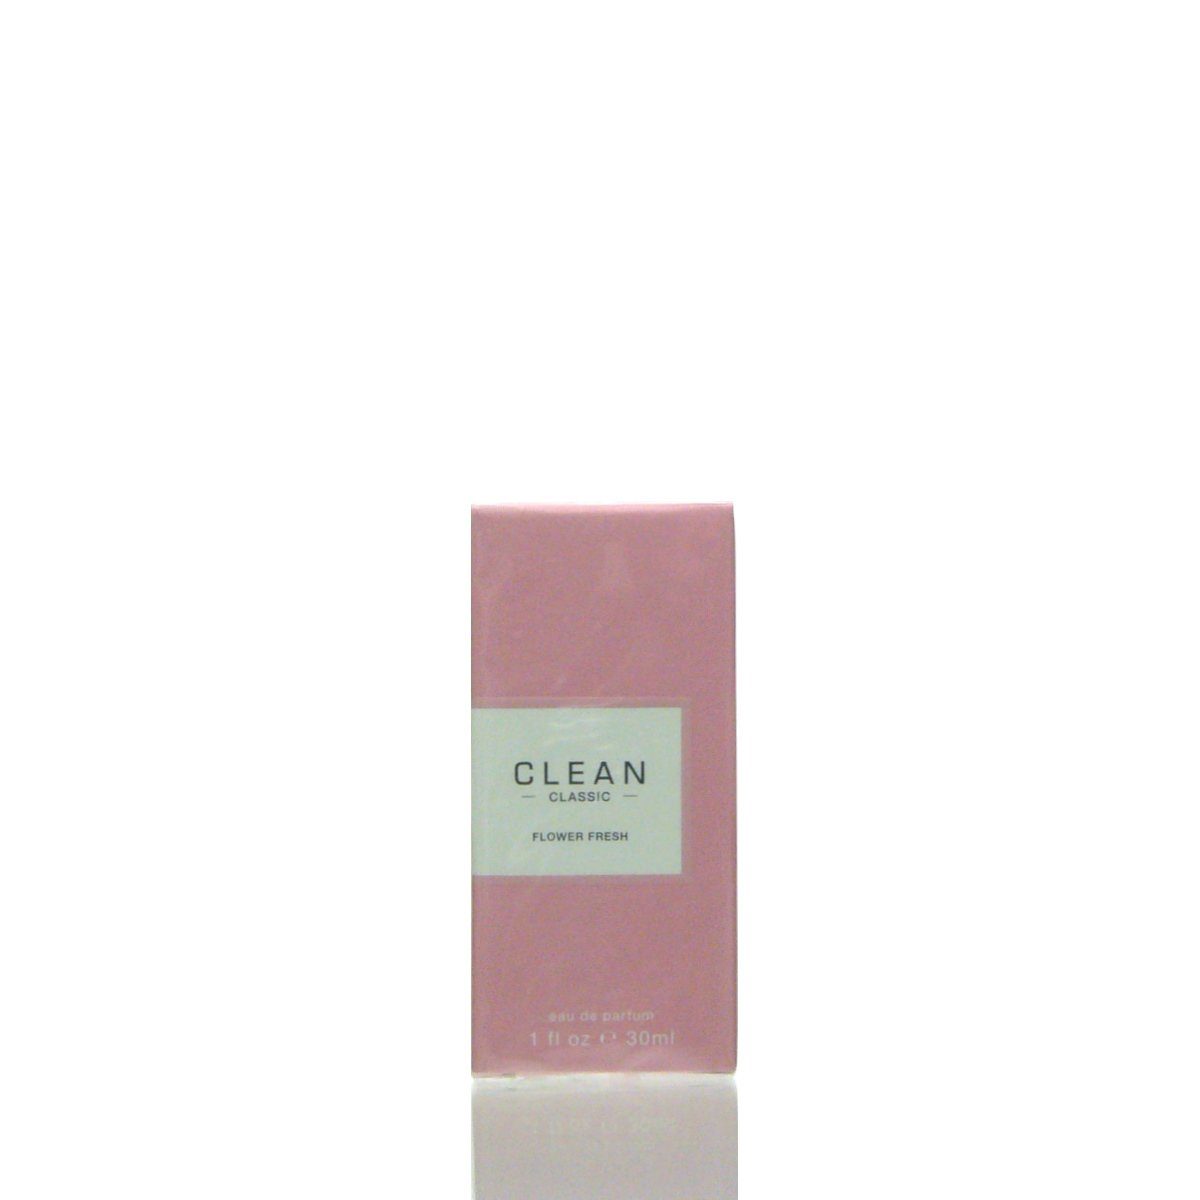 Clean Eau de de Flower CLEAN Parfum 30 Fresh Eau Parfum ml